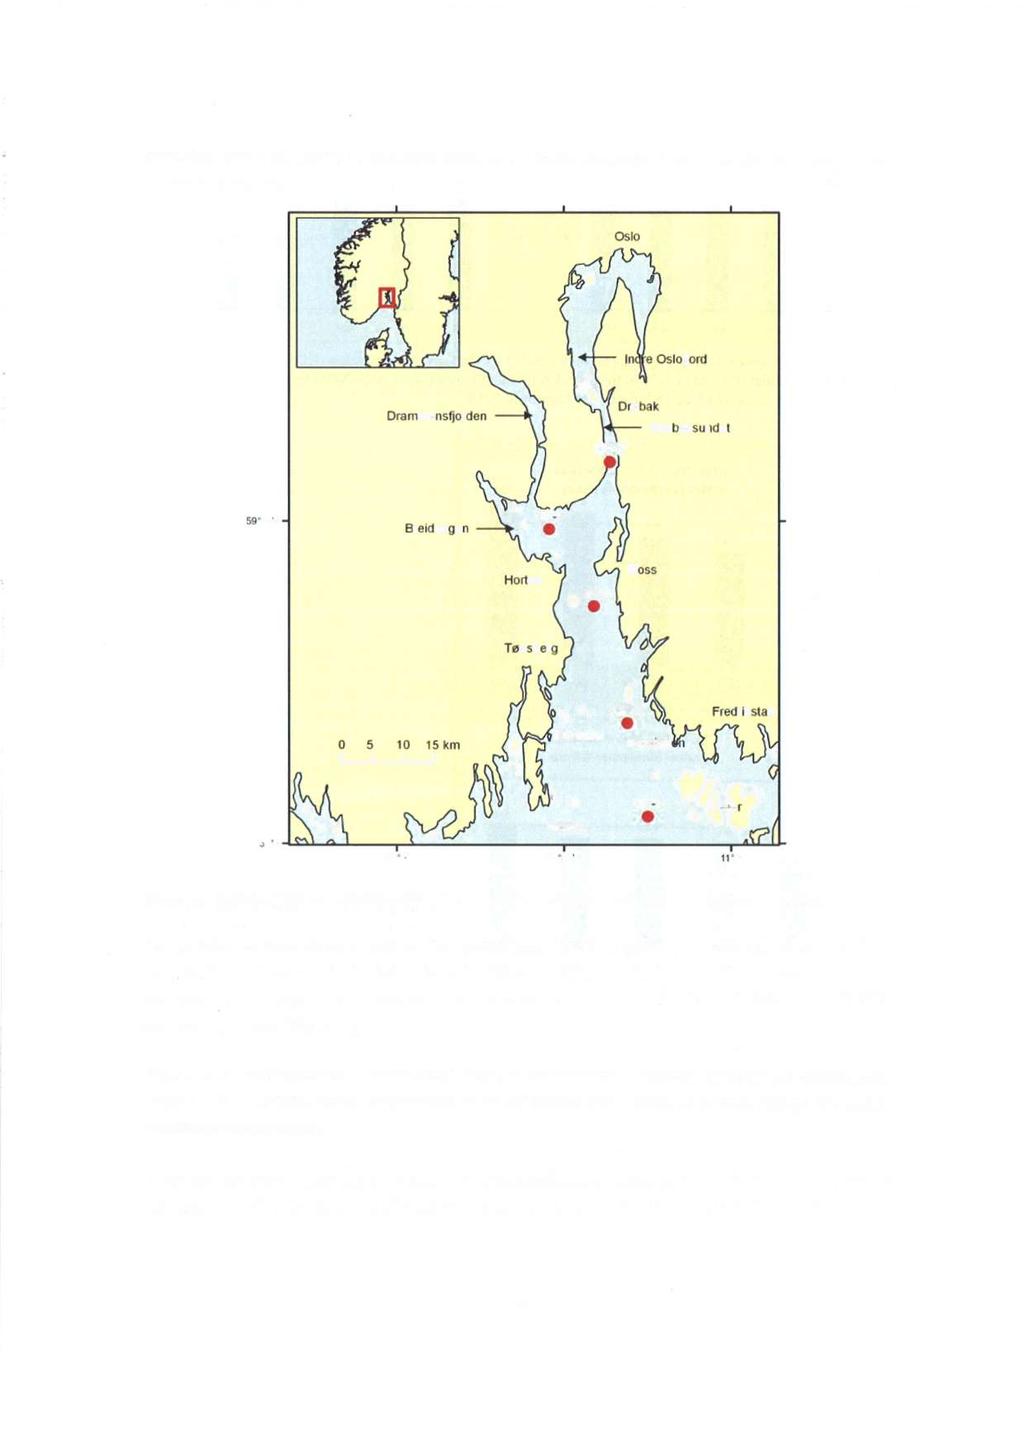 områder, gjort det mulig å estimere kildene til næringssaltene i de øvre lag av Oslofjorden (Aure m.fl. 2010). Oslo Dranirnensfjorden Fulehuk Missinu OF-1 C - Figur 13.